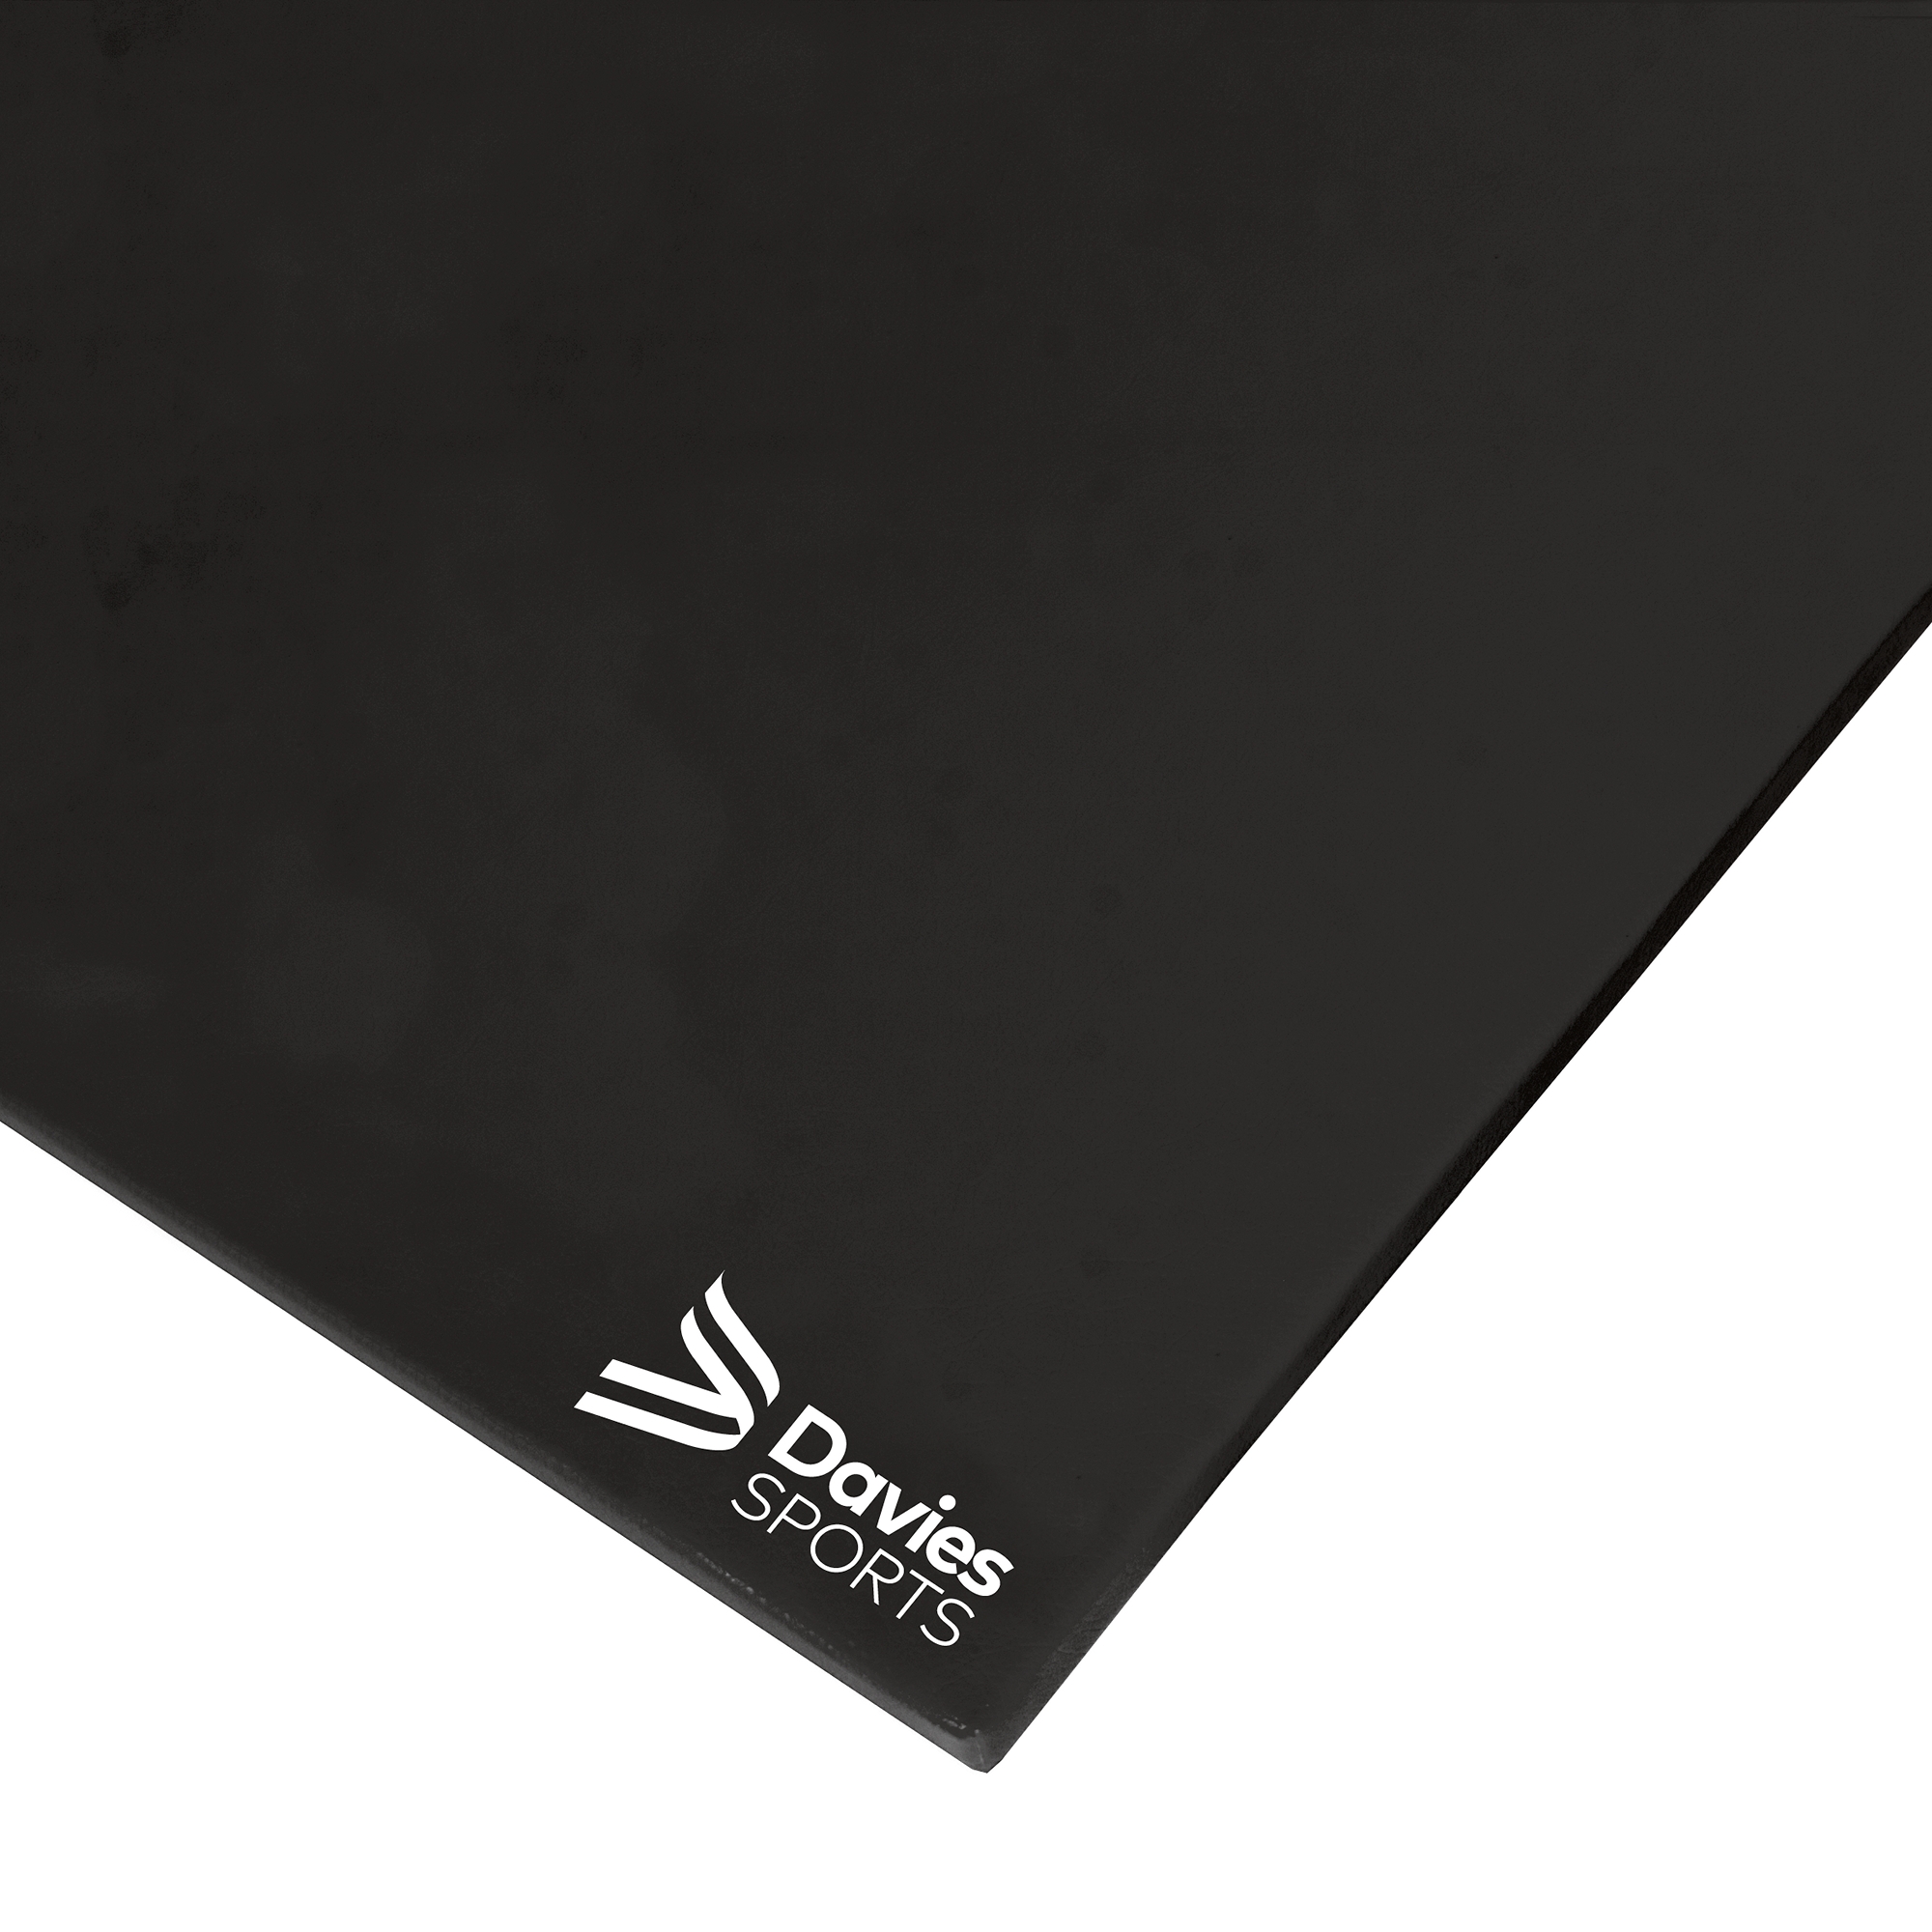 Davies Sports Lightweight Gym Mat Standard Black Cellular Base - 1.83m x 1.22m x 25mm